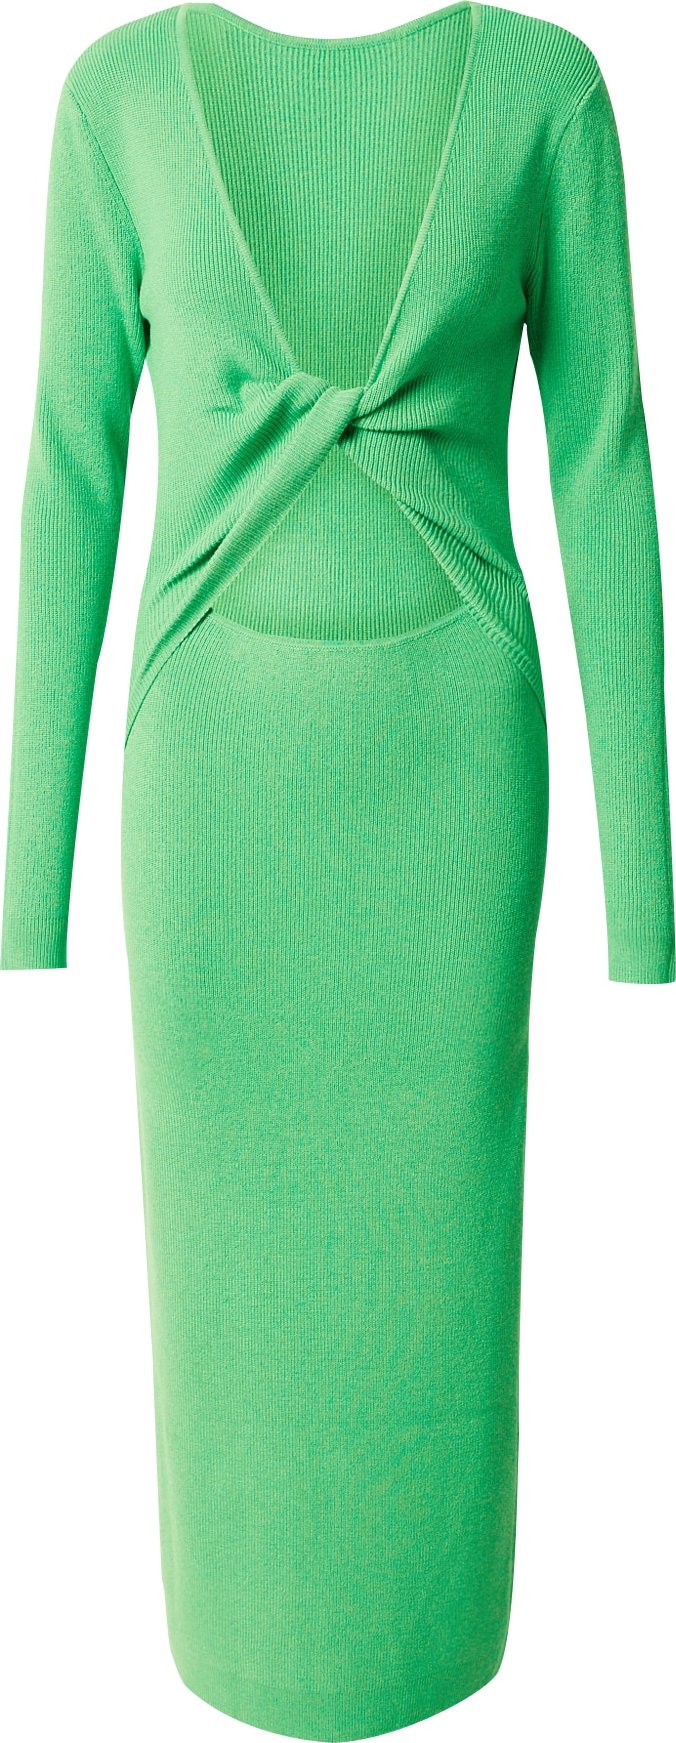 Úpletové šaty 'Lela Jenner' BZR zelená